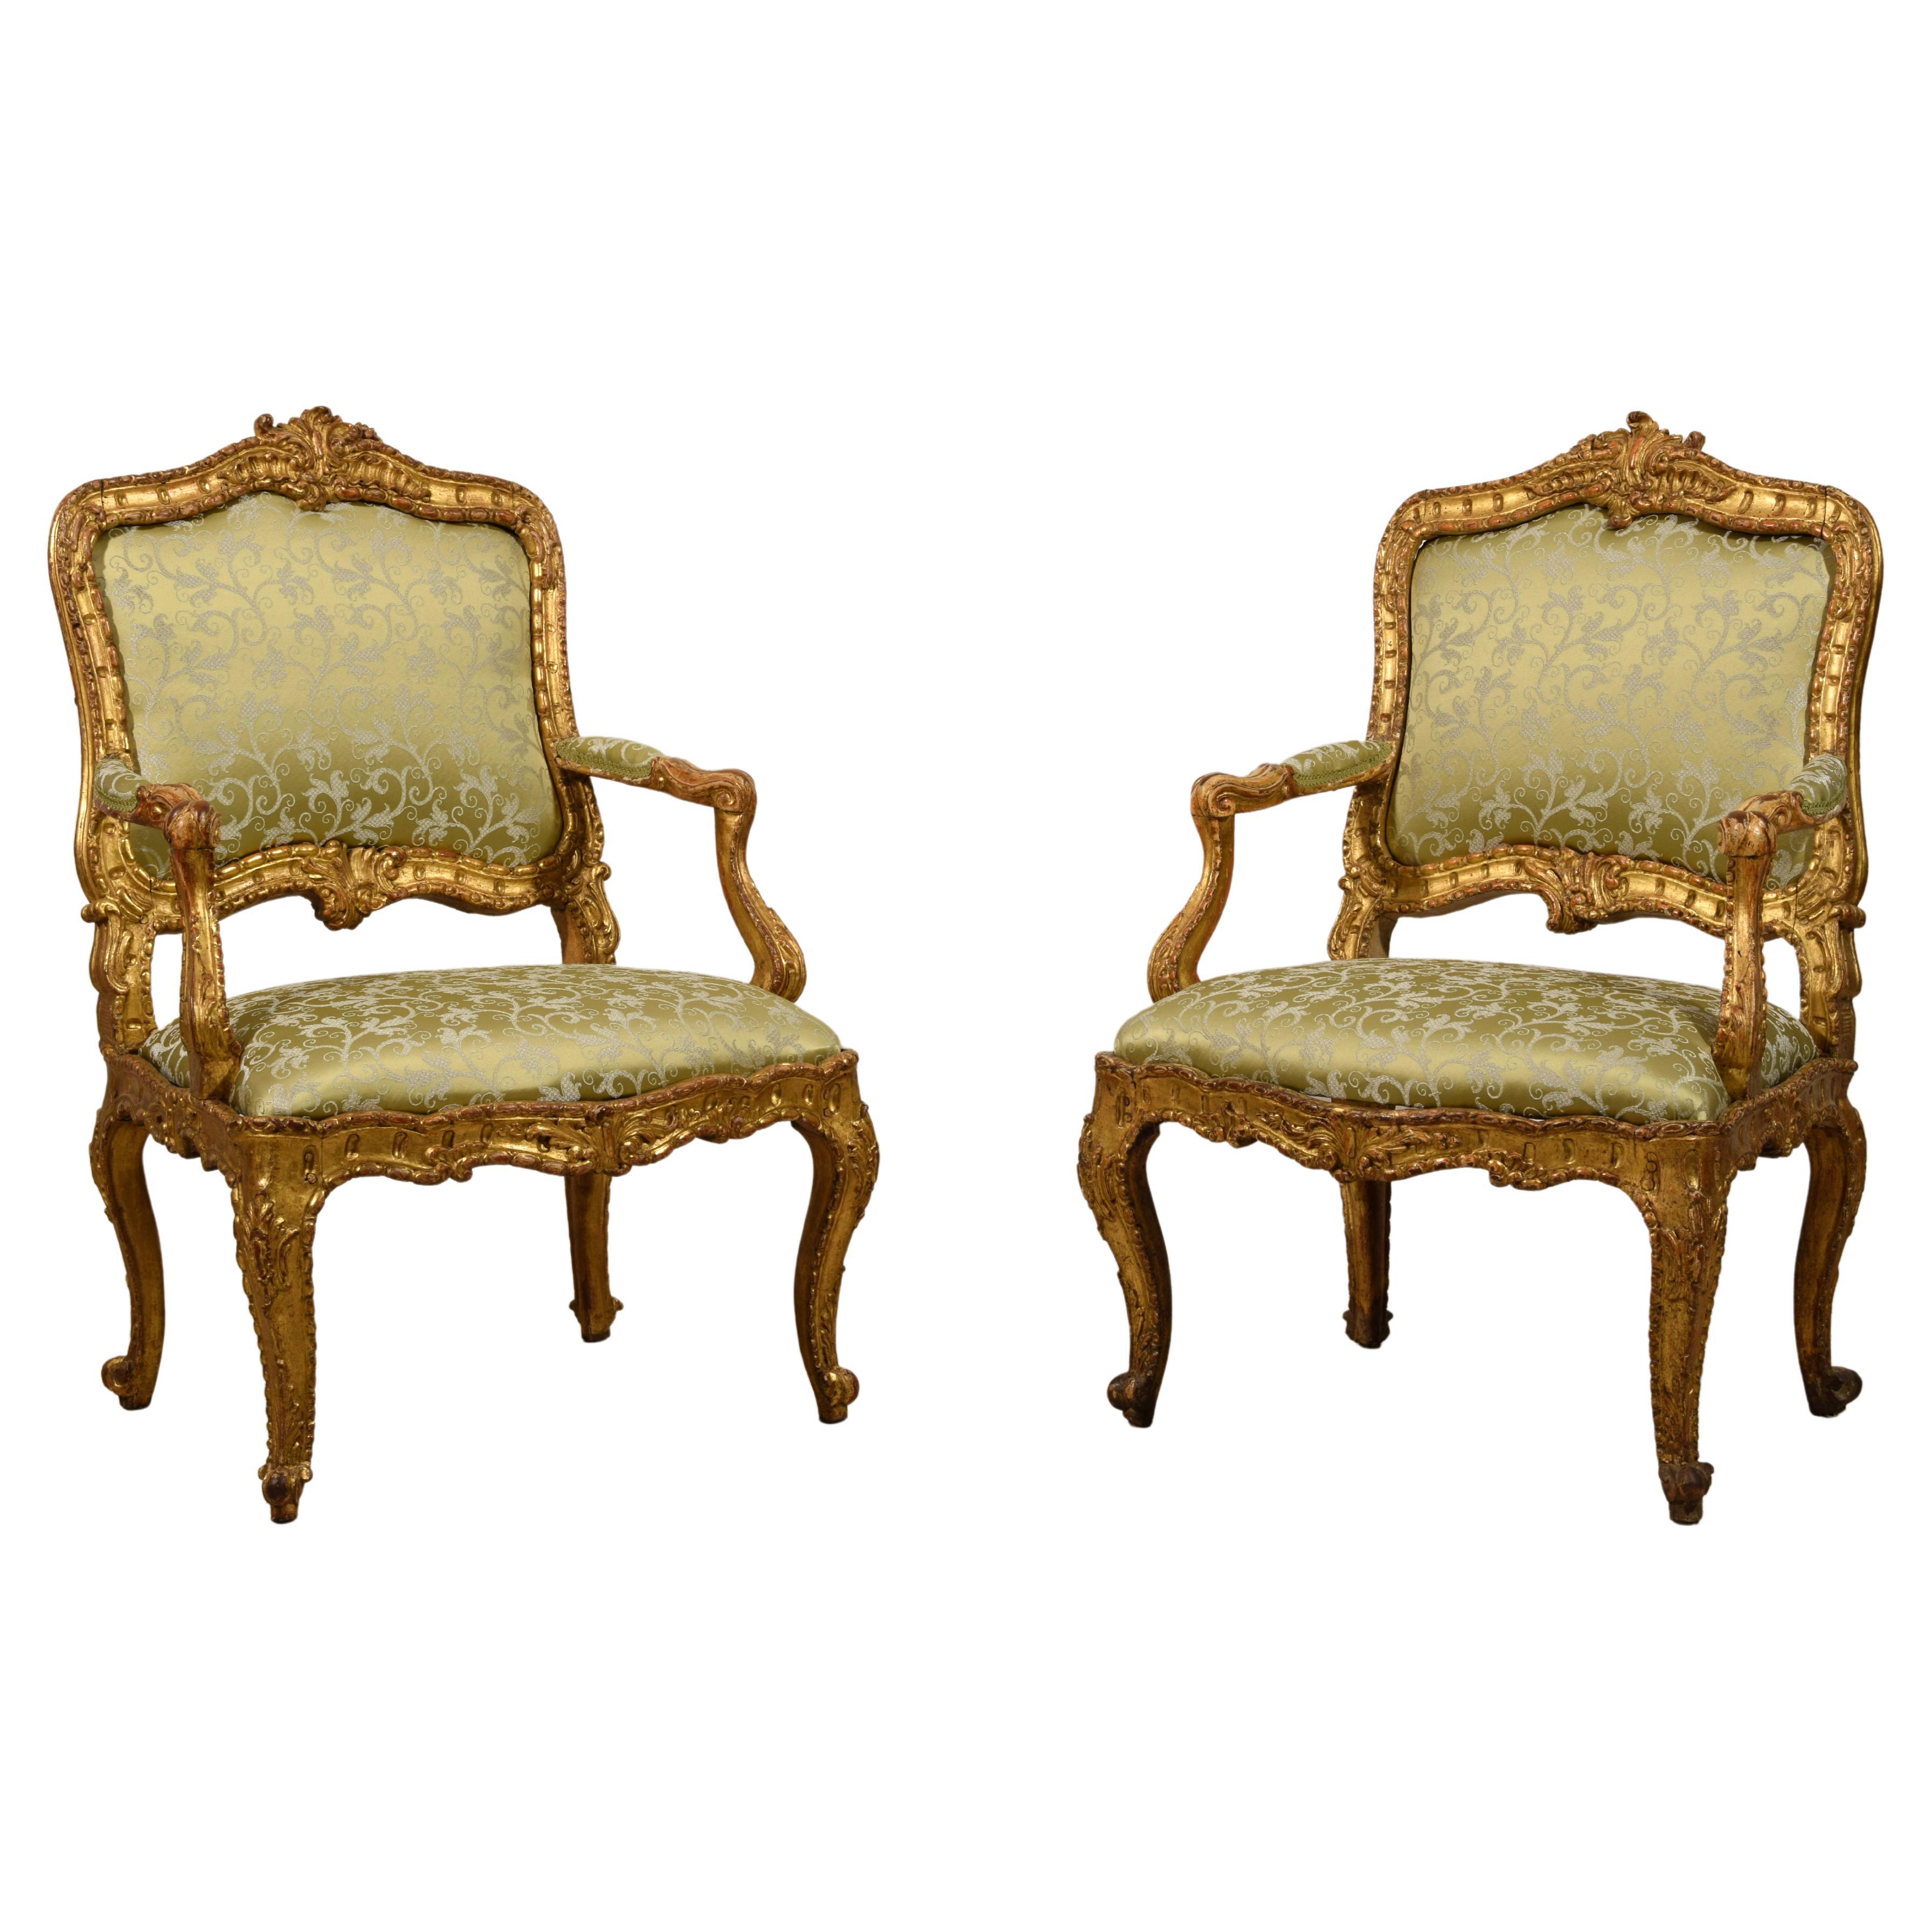 Paire de fauteuils italiens Louis XV en bois doré sculpté du XVIIIe siècle